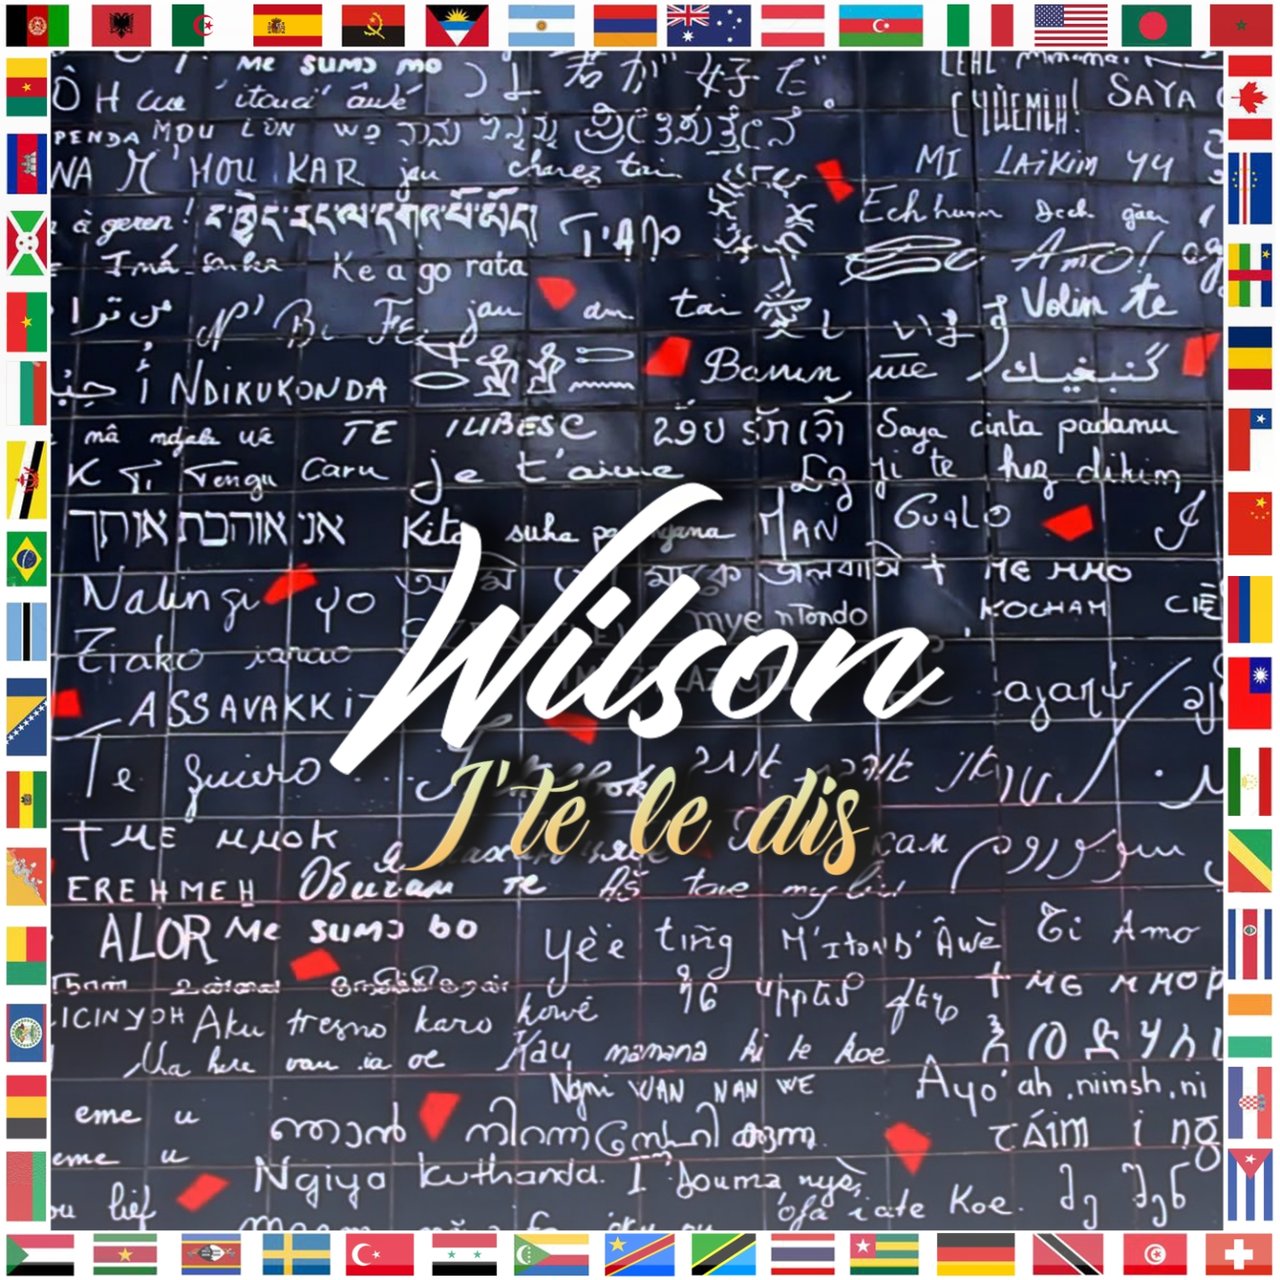 Wilson - J'te Le Dis (Cover)